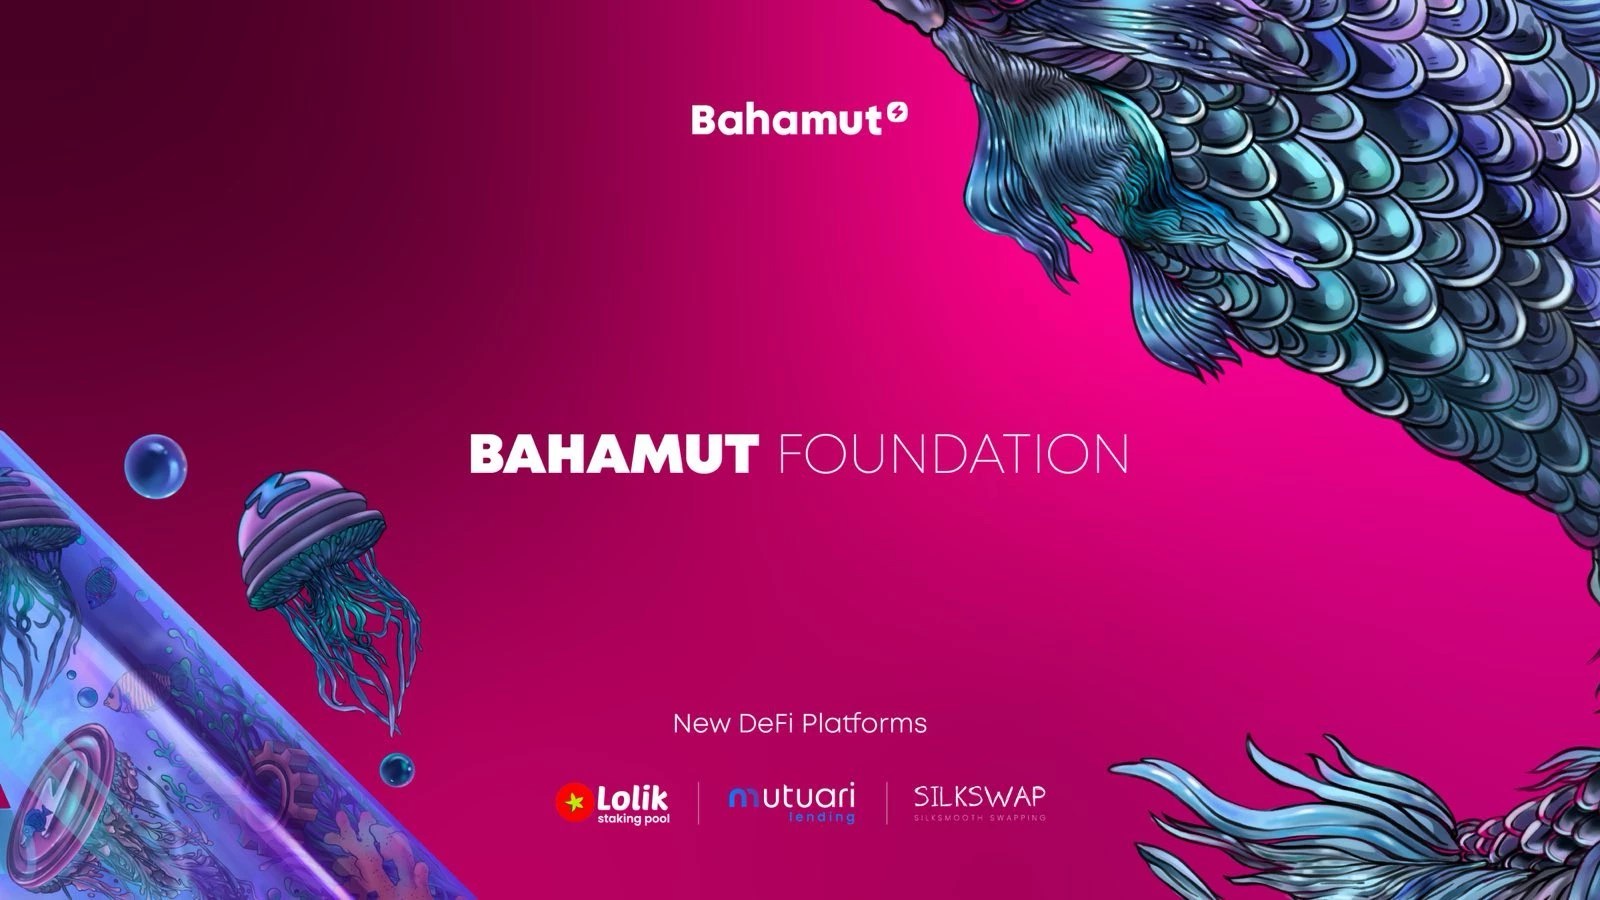 La Fundación Bahamut anuncia el exitoso lanzamiento de 3 proyectos DeFi en Bahamut y la lista aprobada de ganadores iniciales de Bahamut Arena